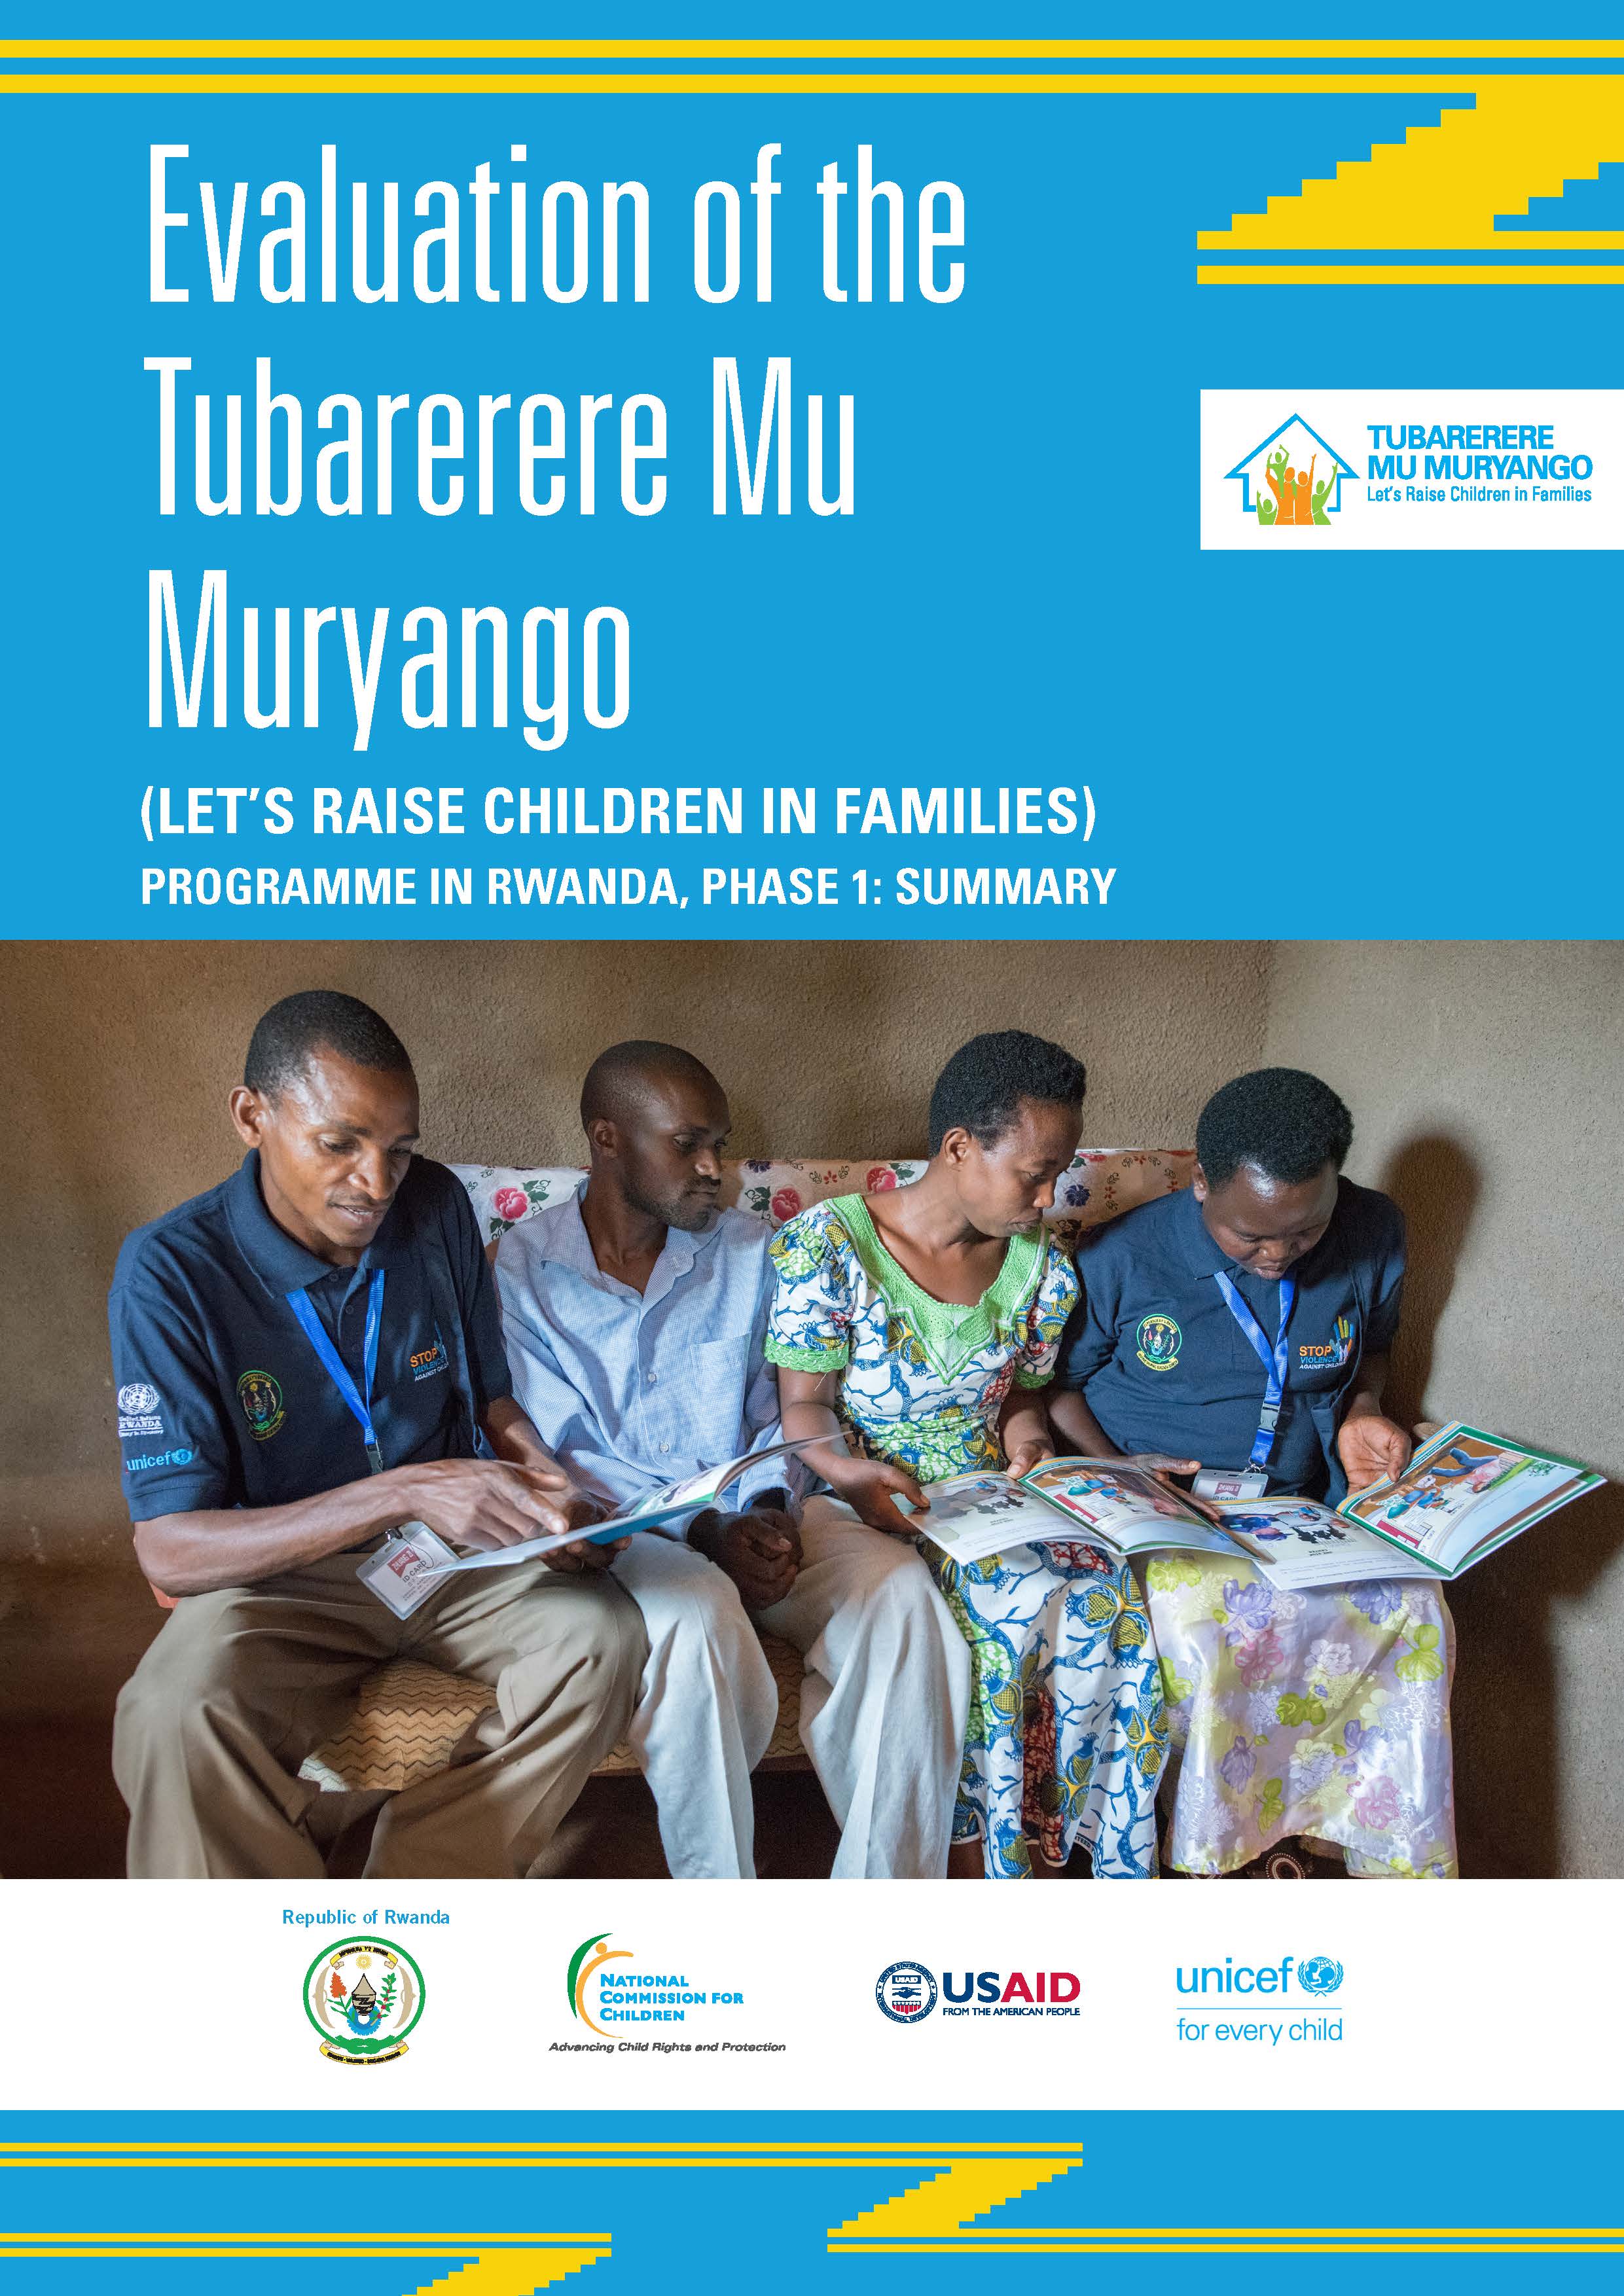 Makoni, K; Marufu, S; Mugabe, A.S and Nkurikiyinka, V. (2017). Summative Evaluation of the Tubarerere Mu Muryango/Let’s Raise Children in Families Programme (TMM Phase I) in Rwanda.